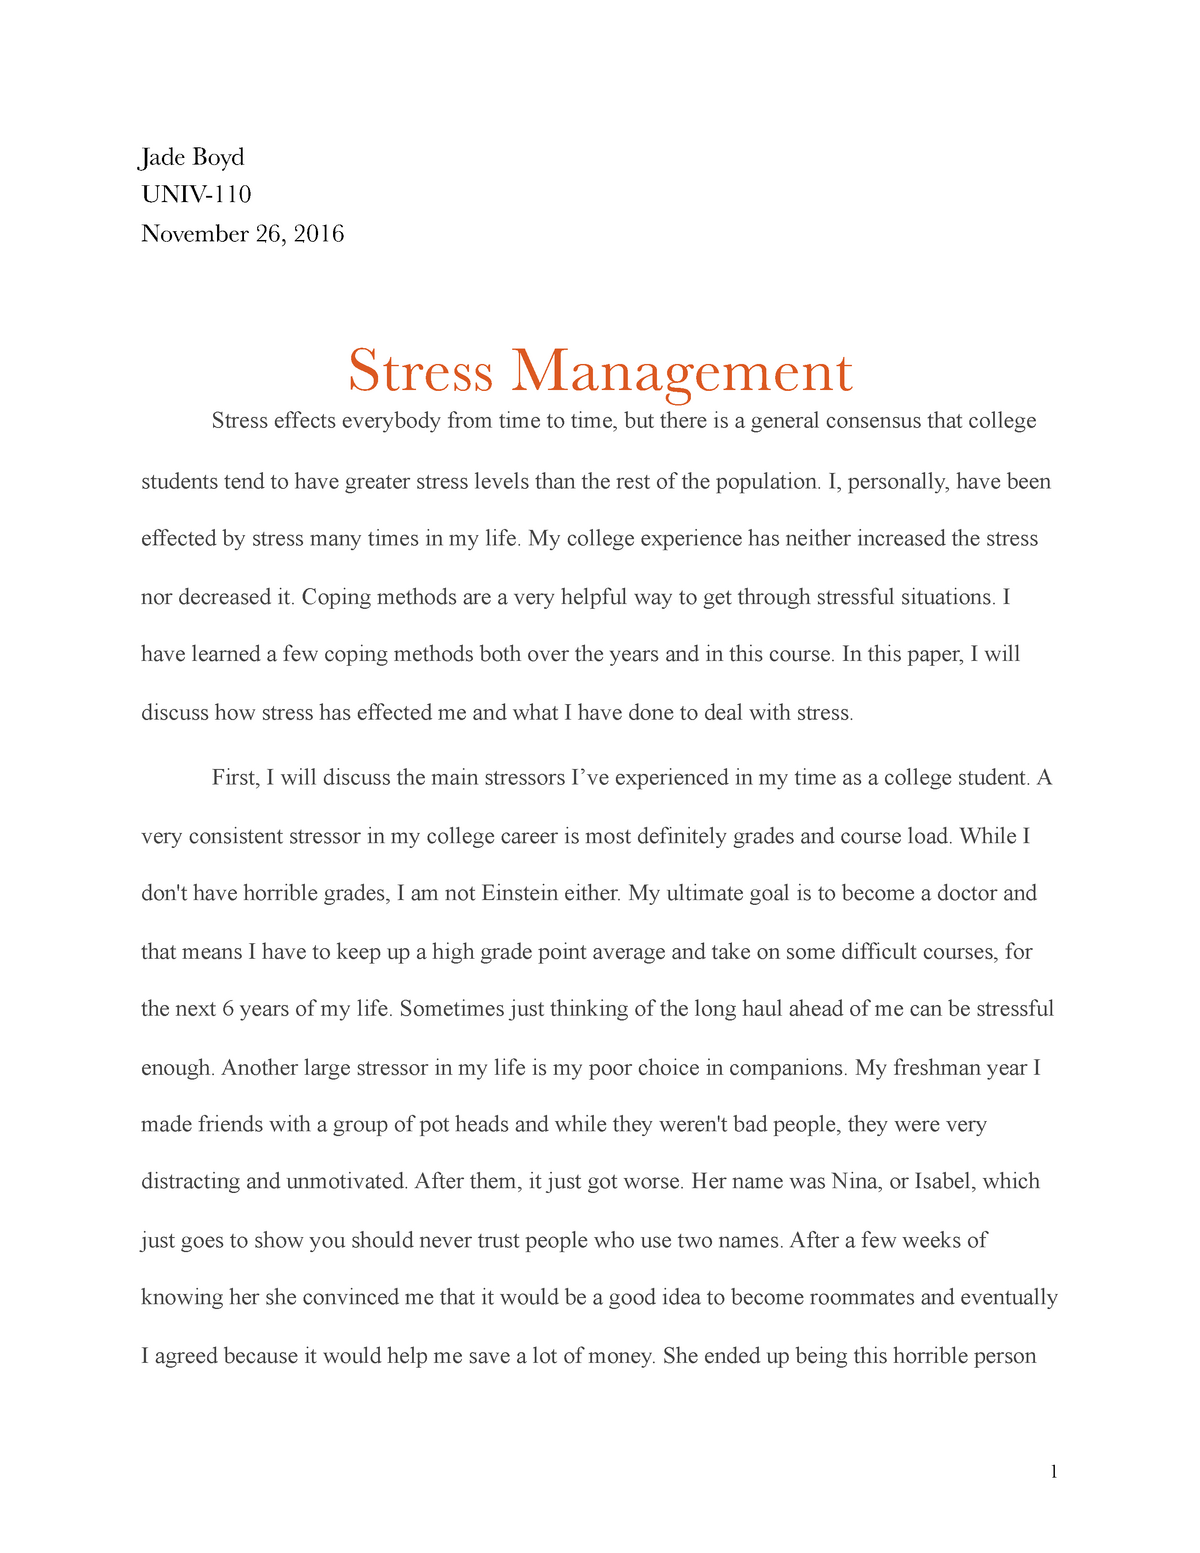 stress management assignment ideas